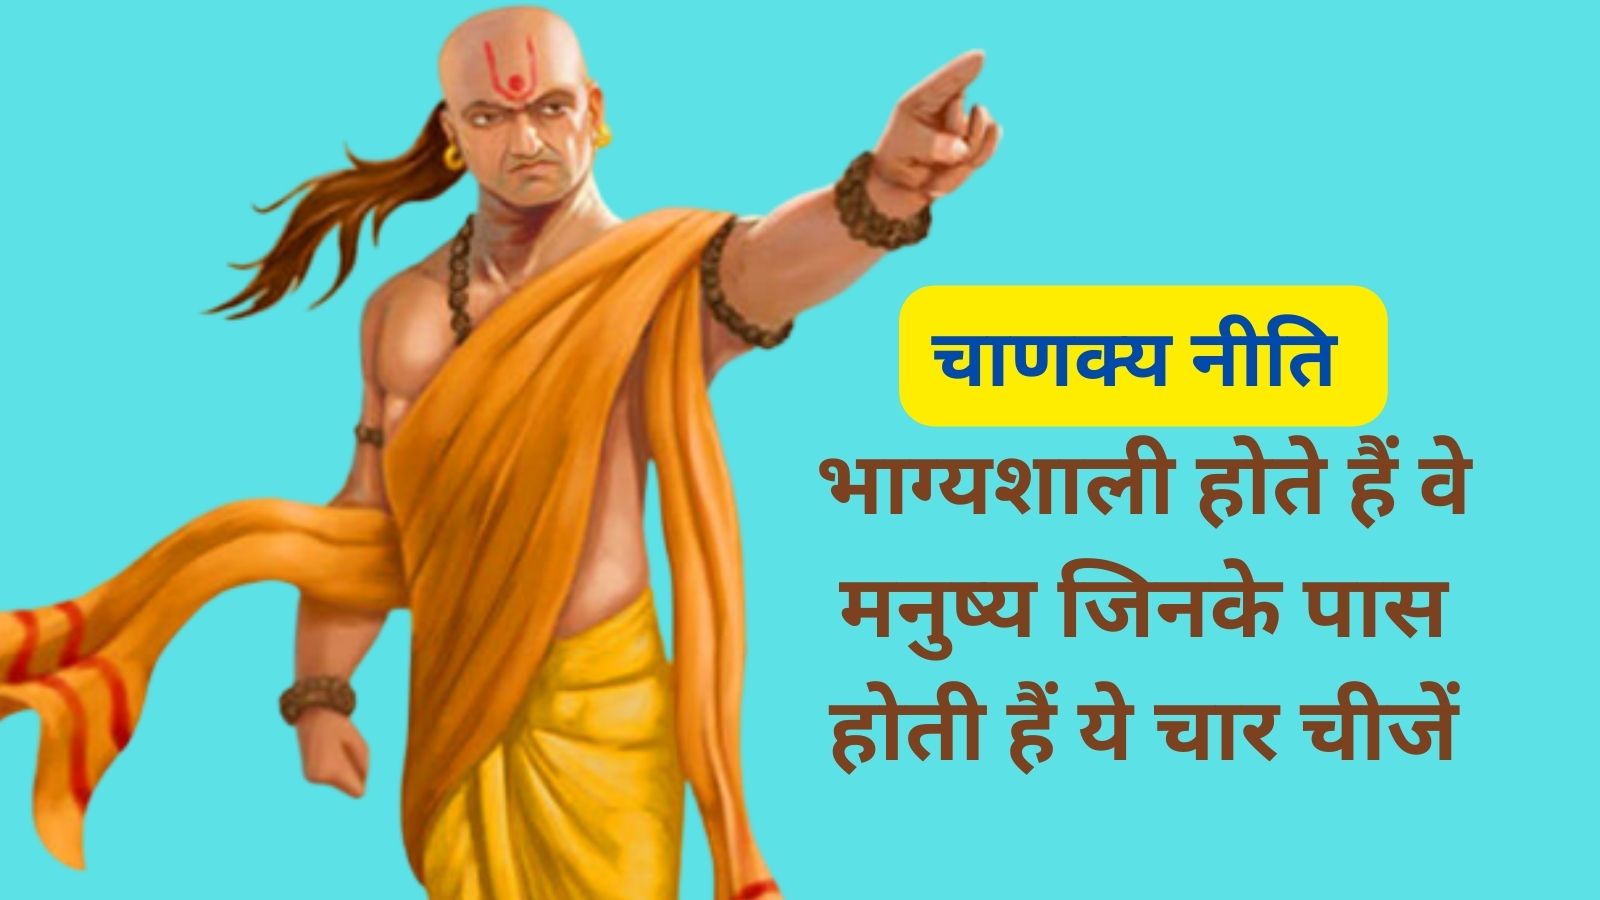 Chanakya Niti:भाग्यशाली होते हैं वे मनुष्य जिनके पास होती हैं ये चार चीजें